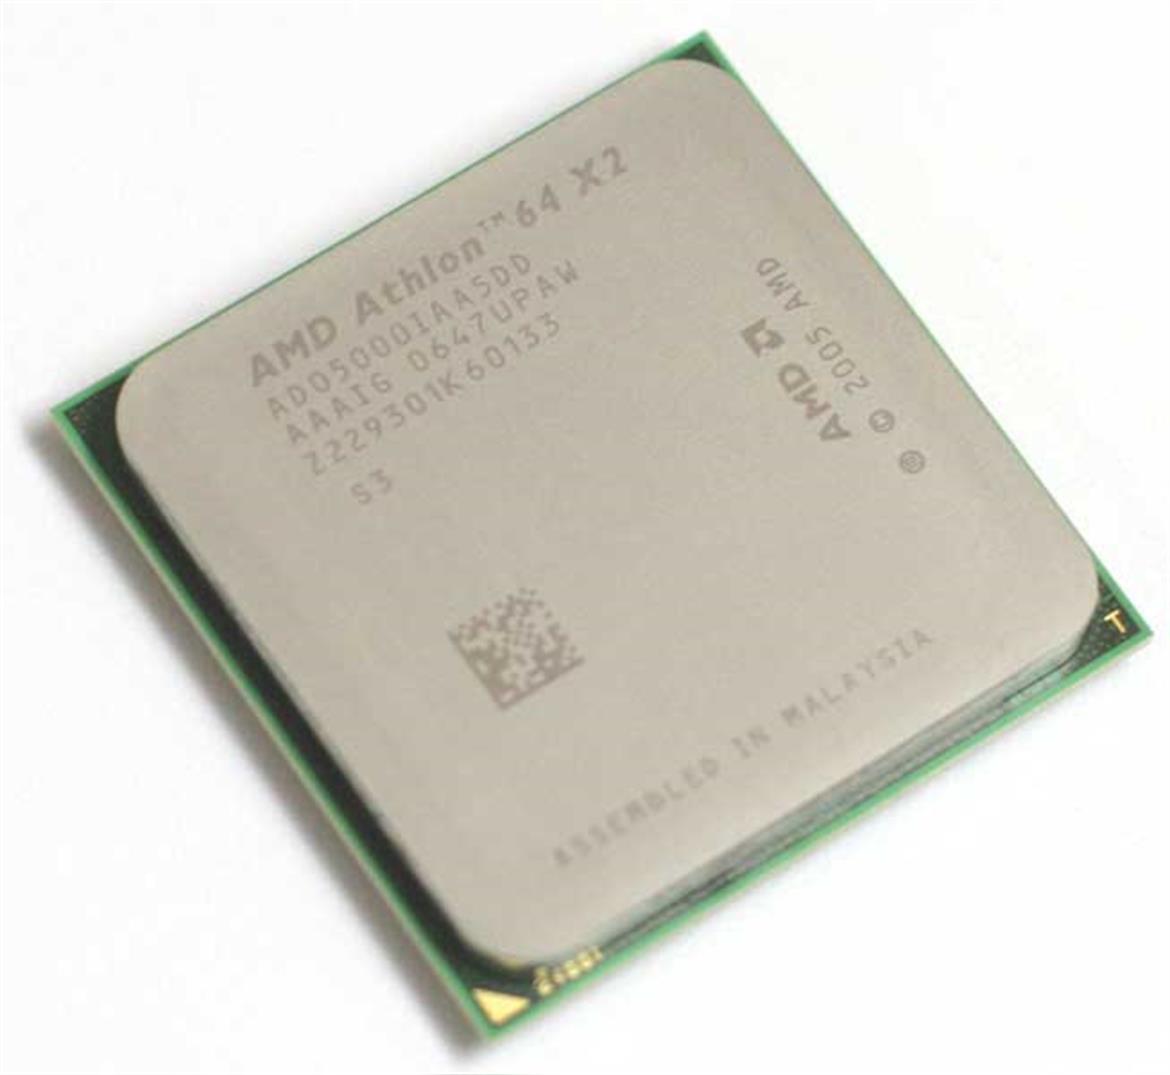 AMD Athlon 64 X2 65nm Brisbane-Core